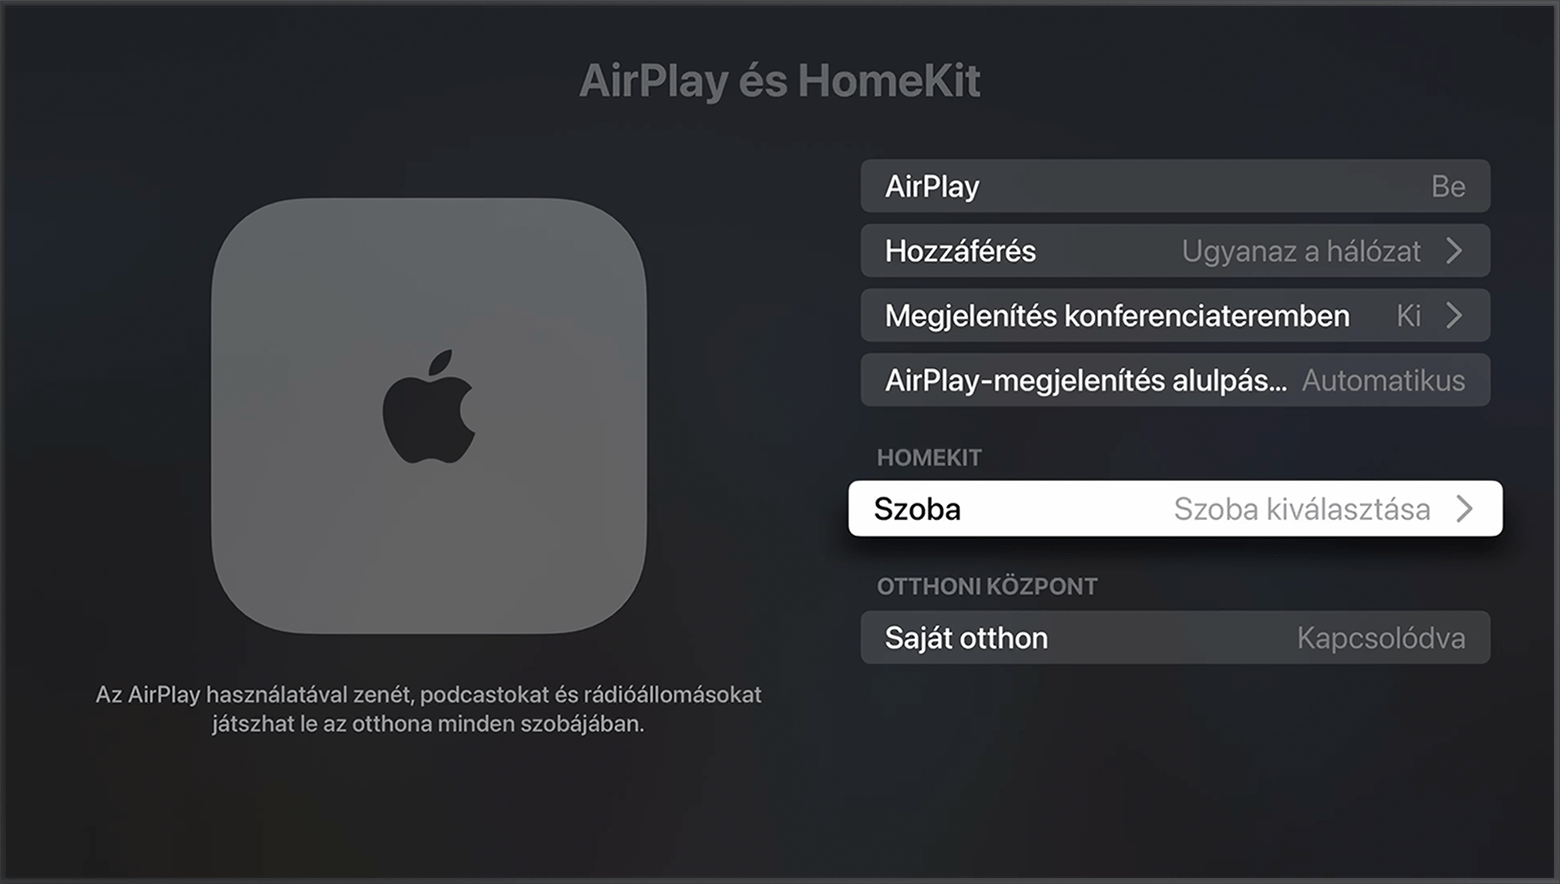 A Szoba az AirPlay és HomeKit képernyőjén az Apple TV beállításaiban, a HomeKit lehetőség alatt jelenik meg